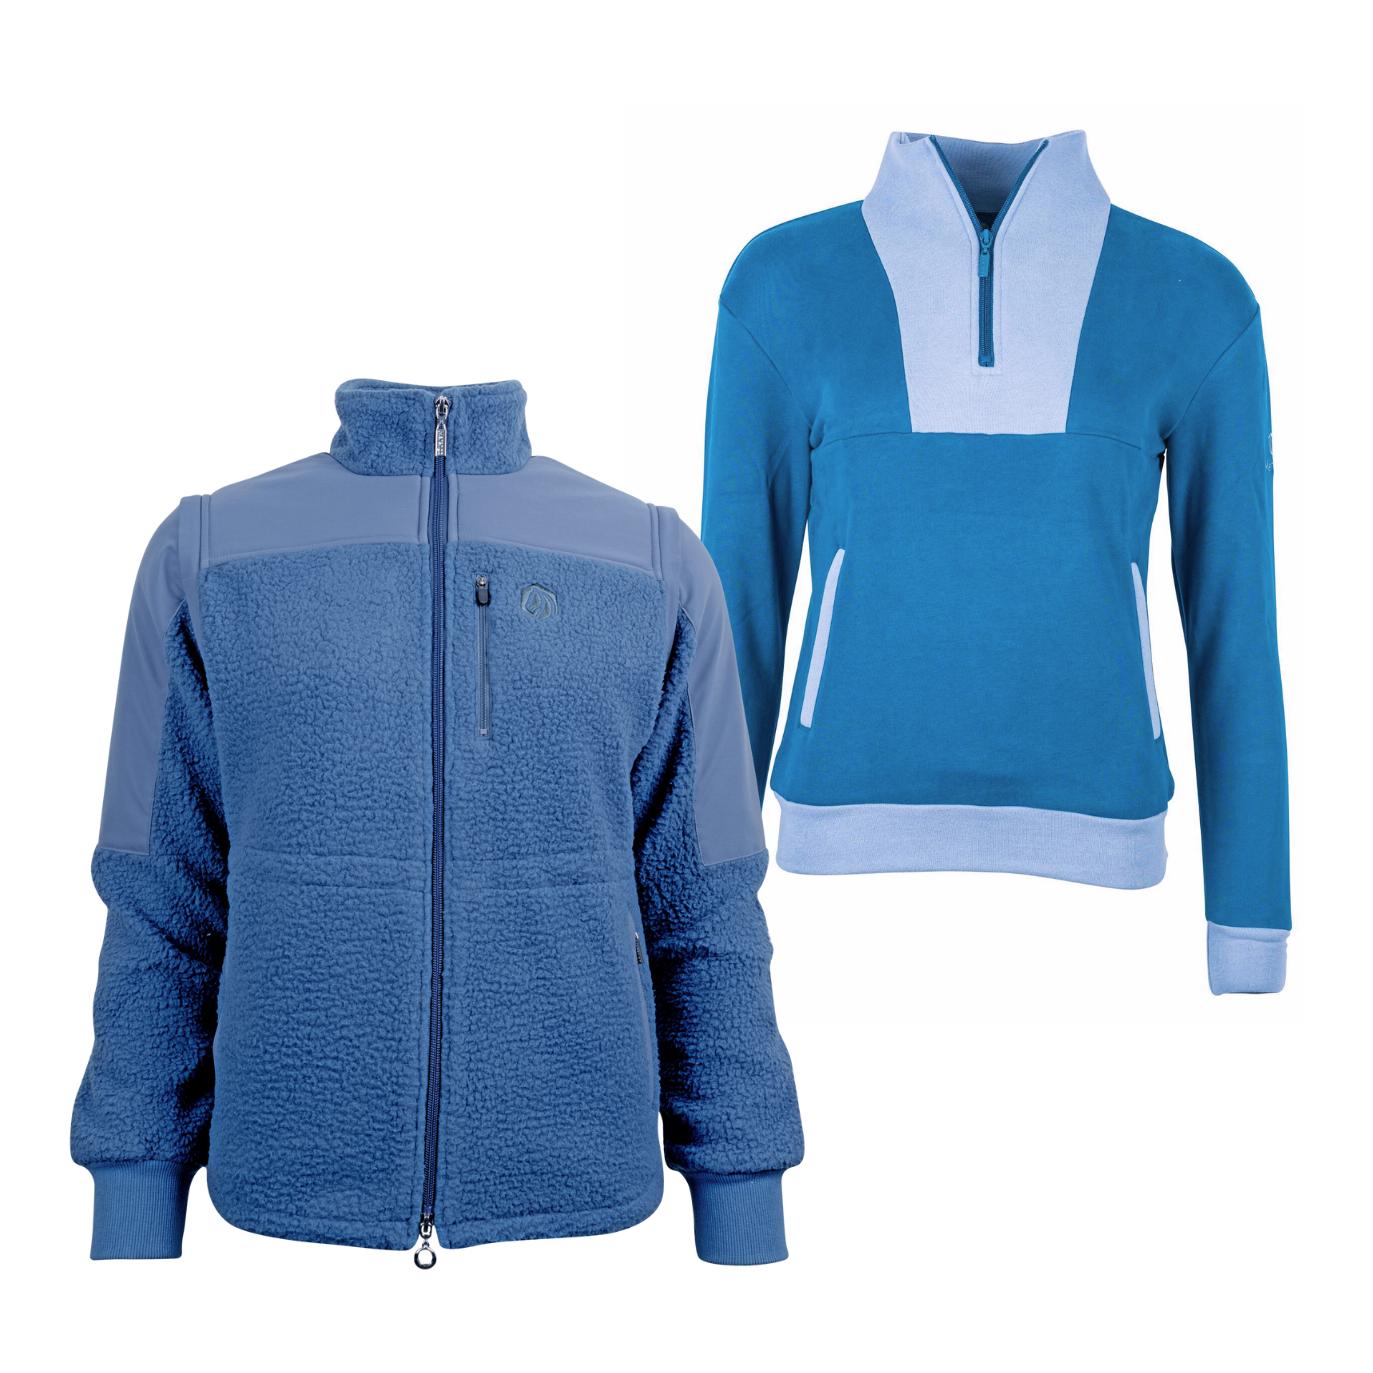 Marengo Outfit-Set Cosy Rides - Teddyfleece-Jacke & Zip Sweatshirt Farbe: Calm Blue / Ocean Blue, Grösse Pullover: XS, Grösse Jacke: XXS von Marengo